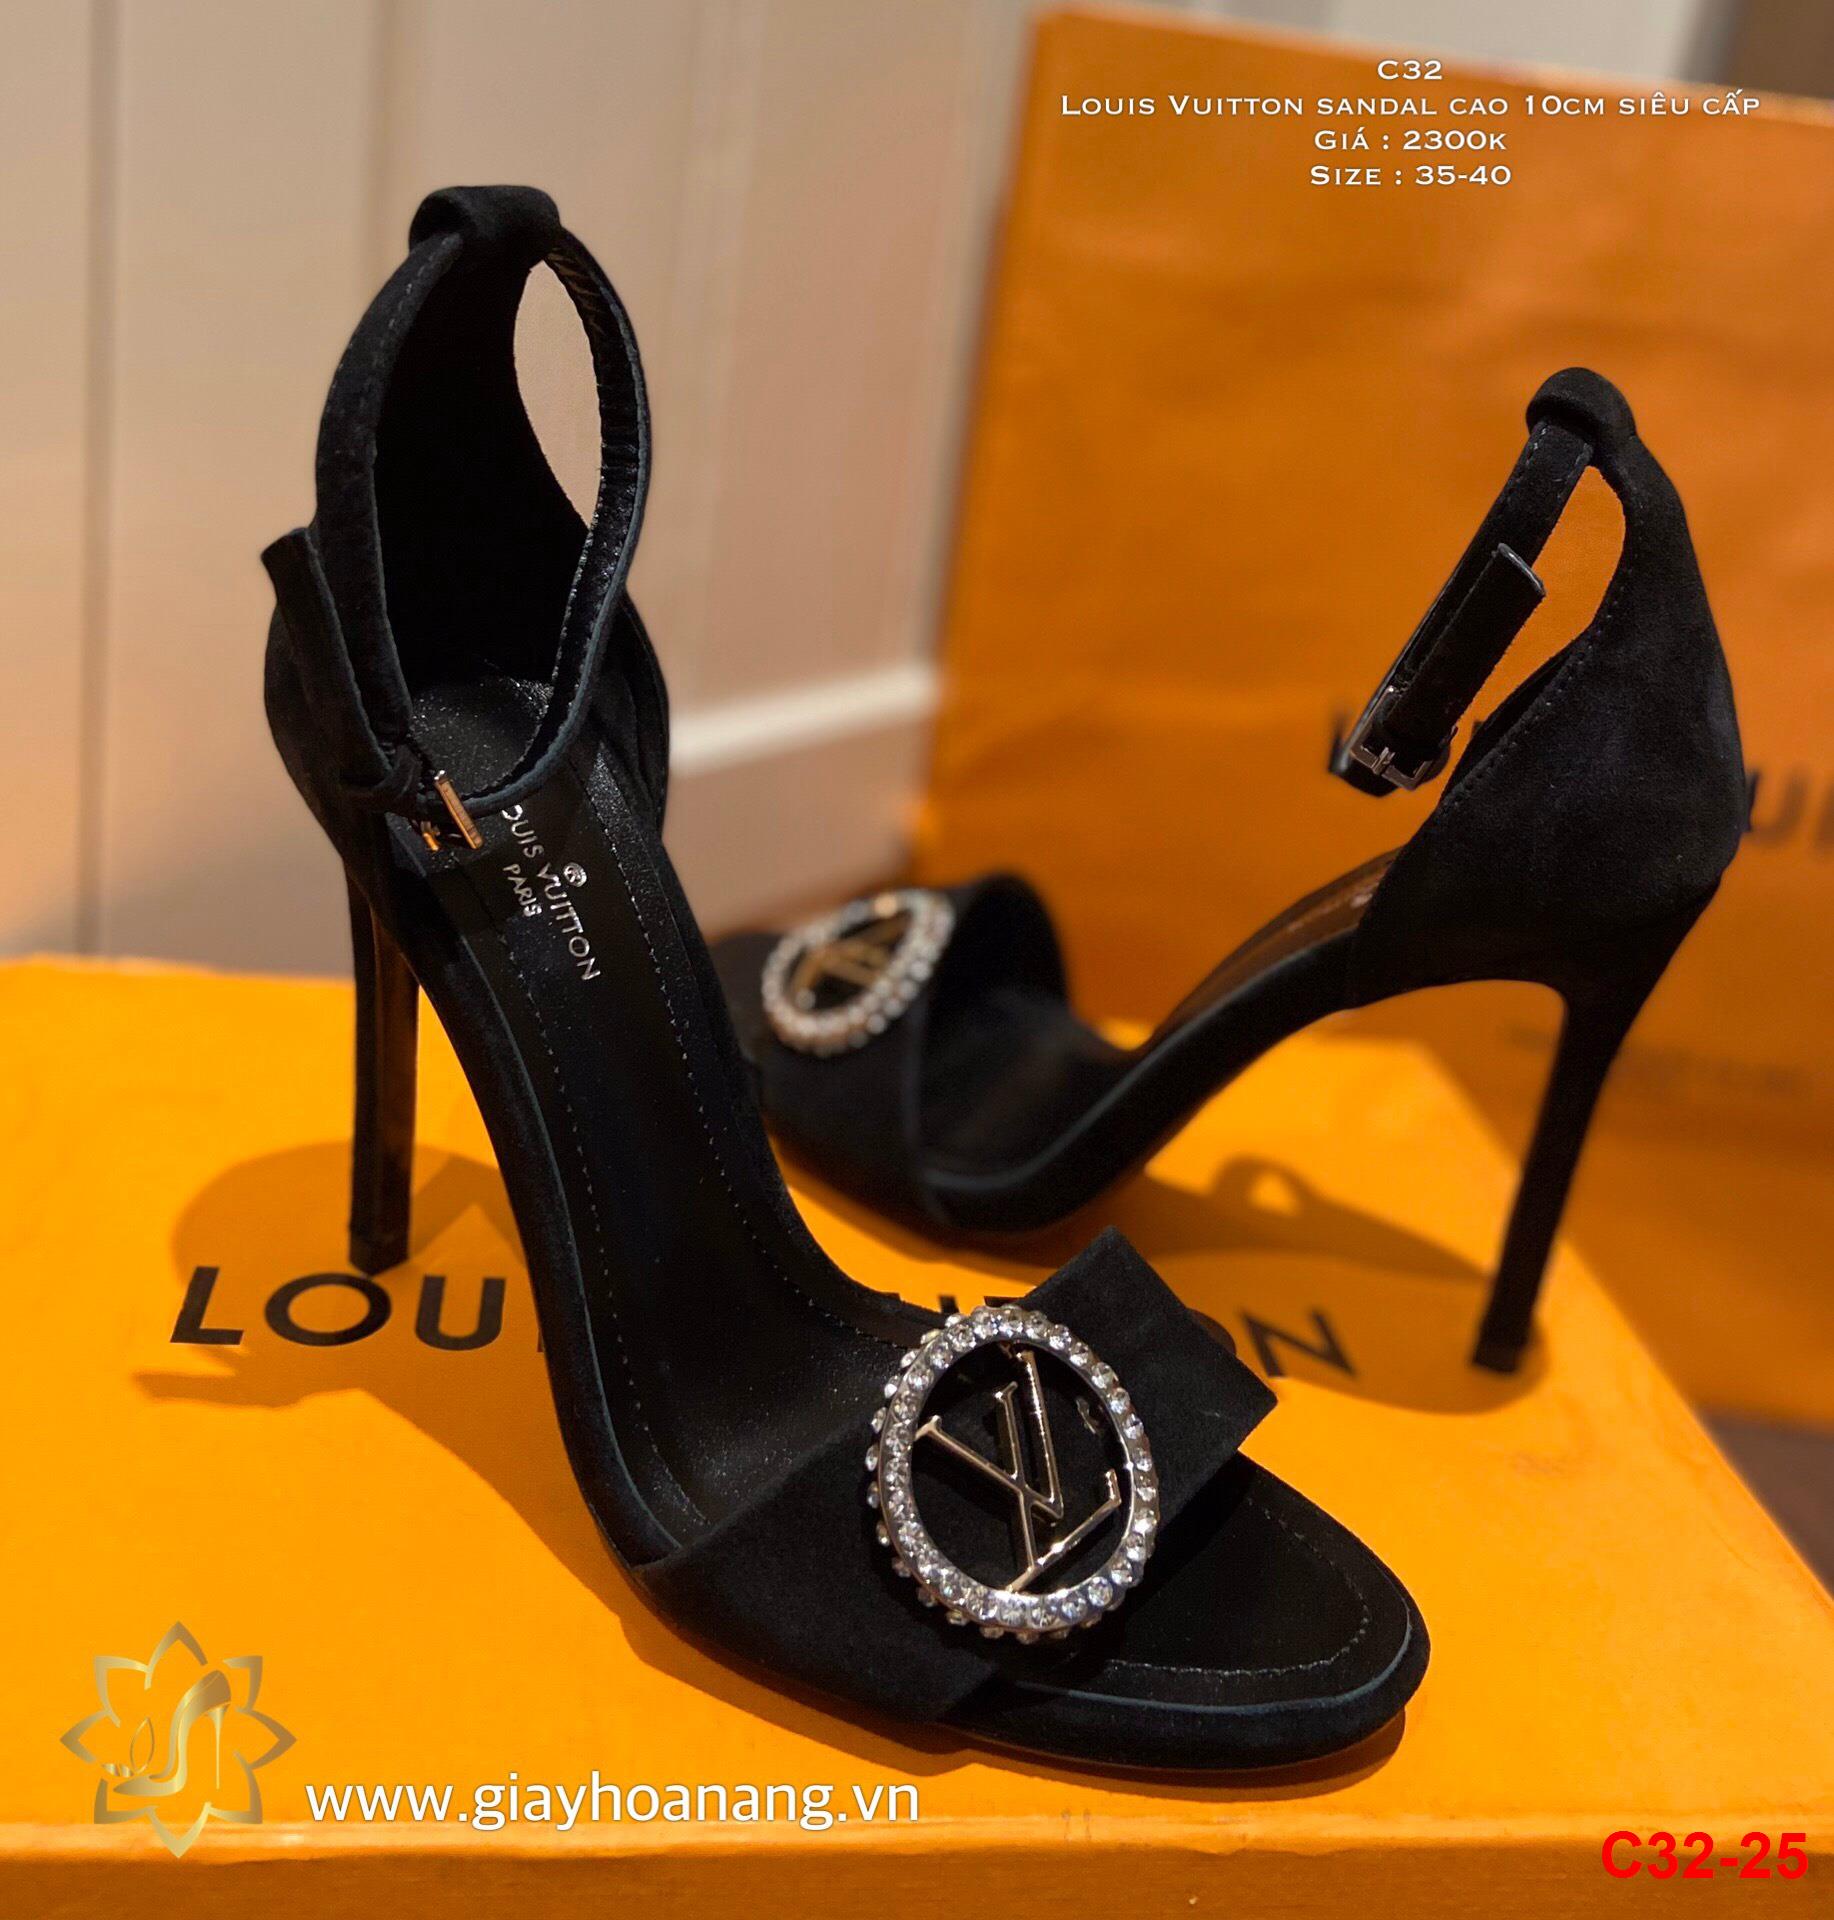 C32-25 Louis Vuitton sandal cao 10cm siêu cấp